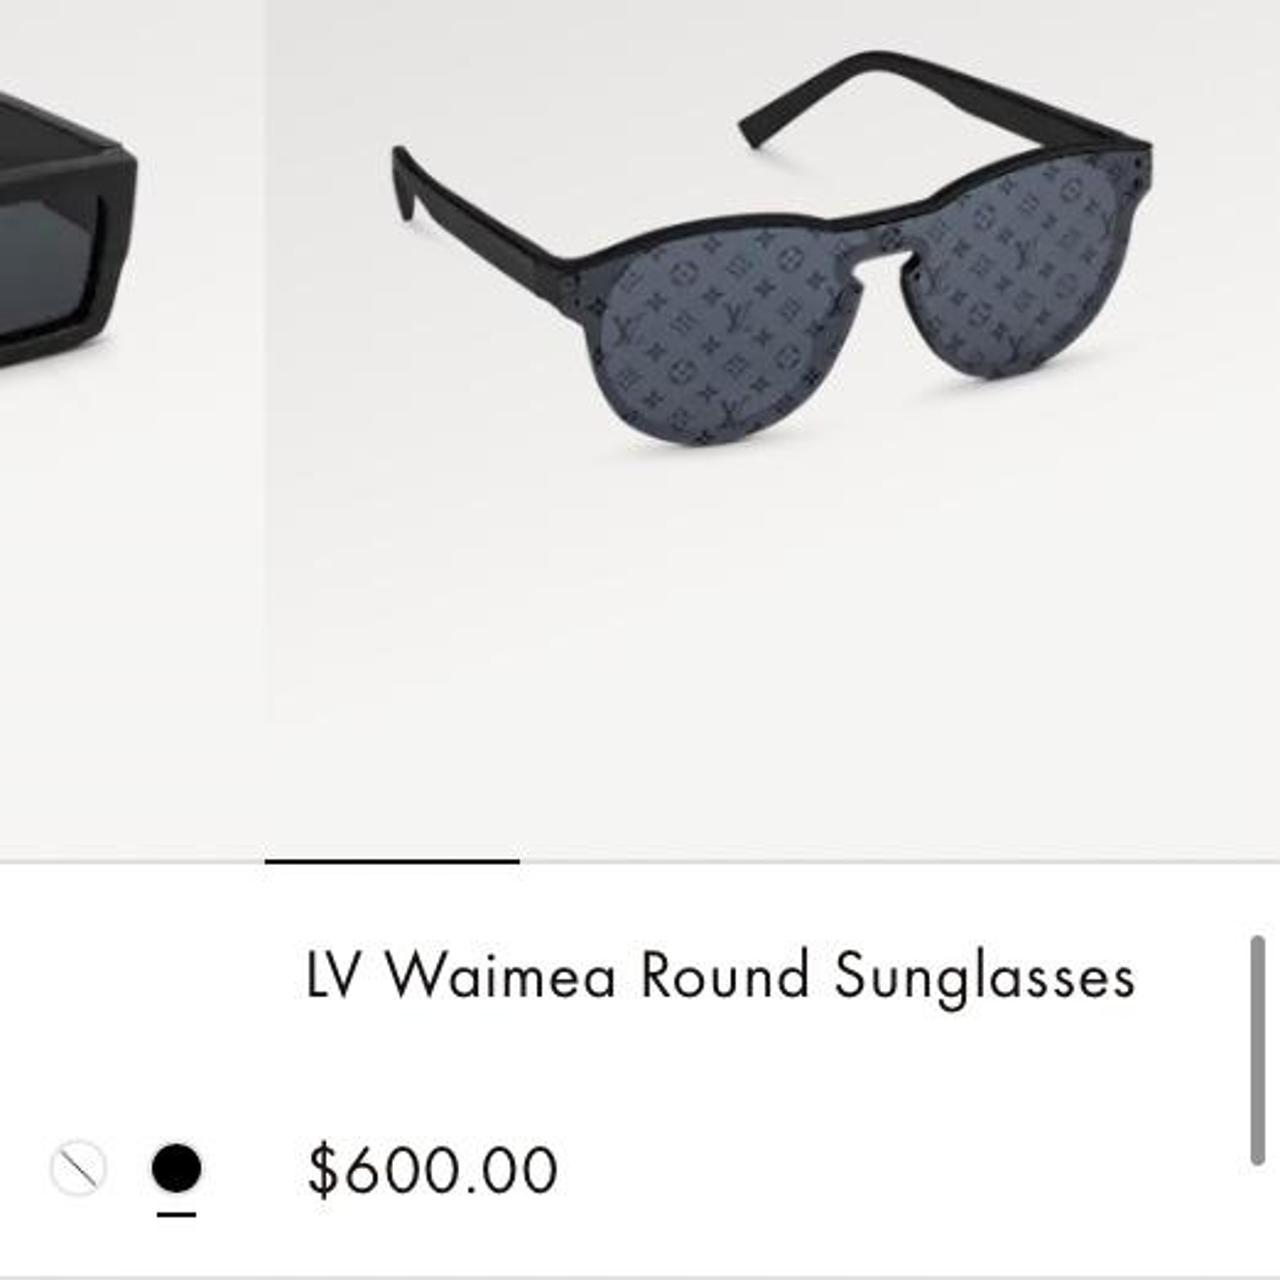 lv waimea round sunglasses